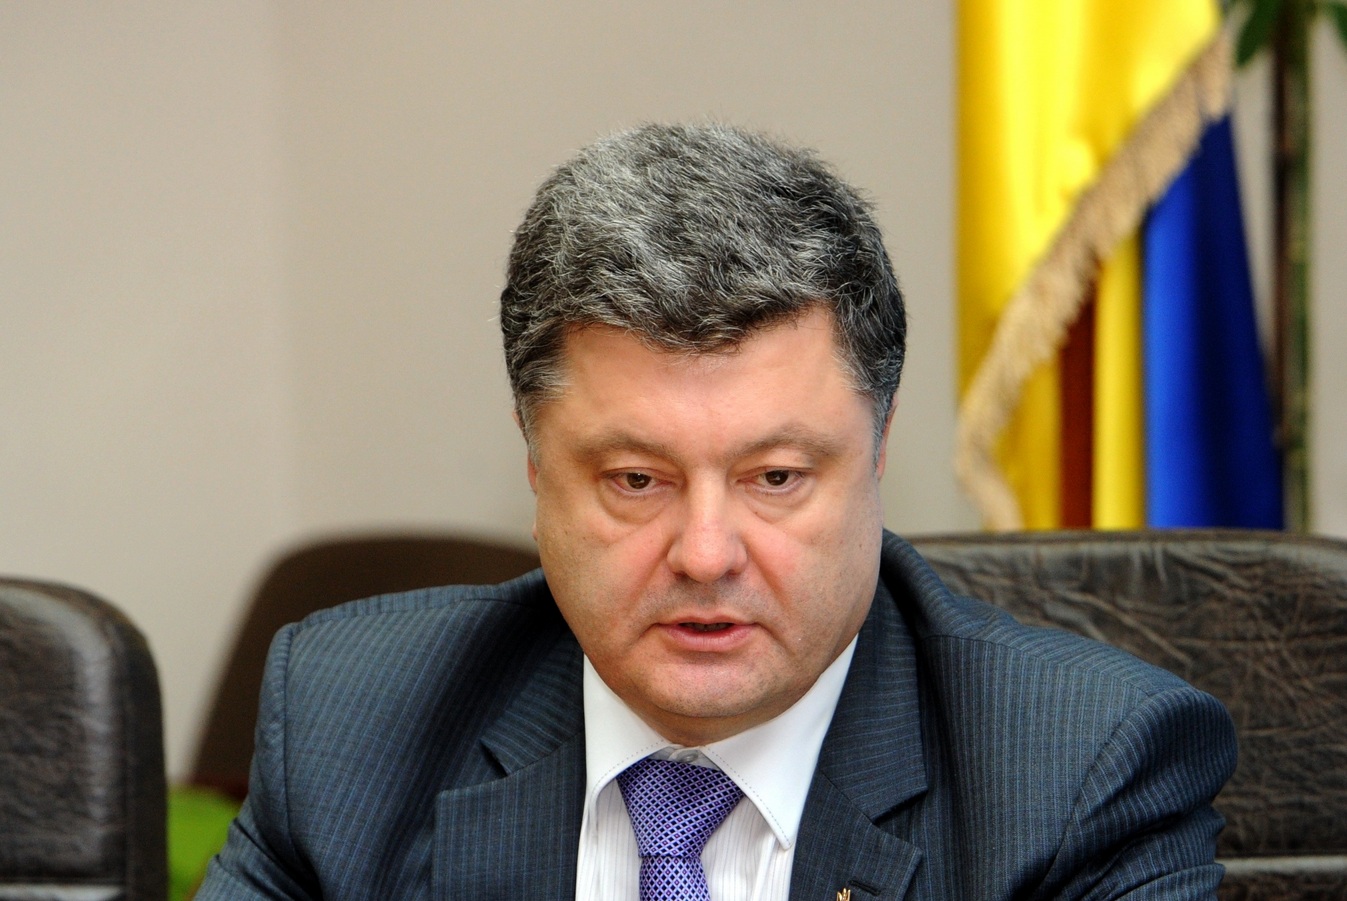 Главное за день 3 ноября: ДНР и ЛНР объявили результаты выборов, Порошенко отменяет закон о статусе Донбасса, новые обстрелы Донецка